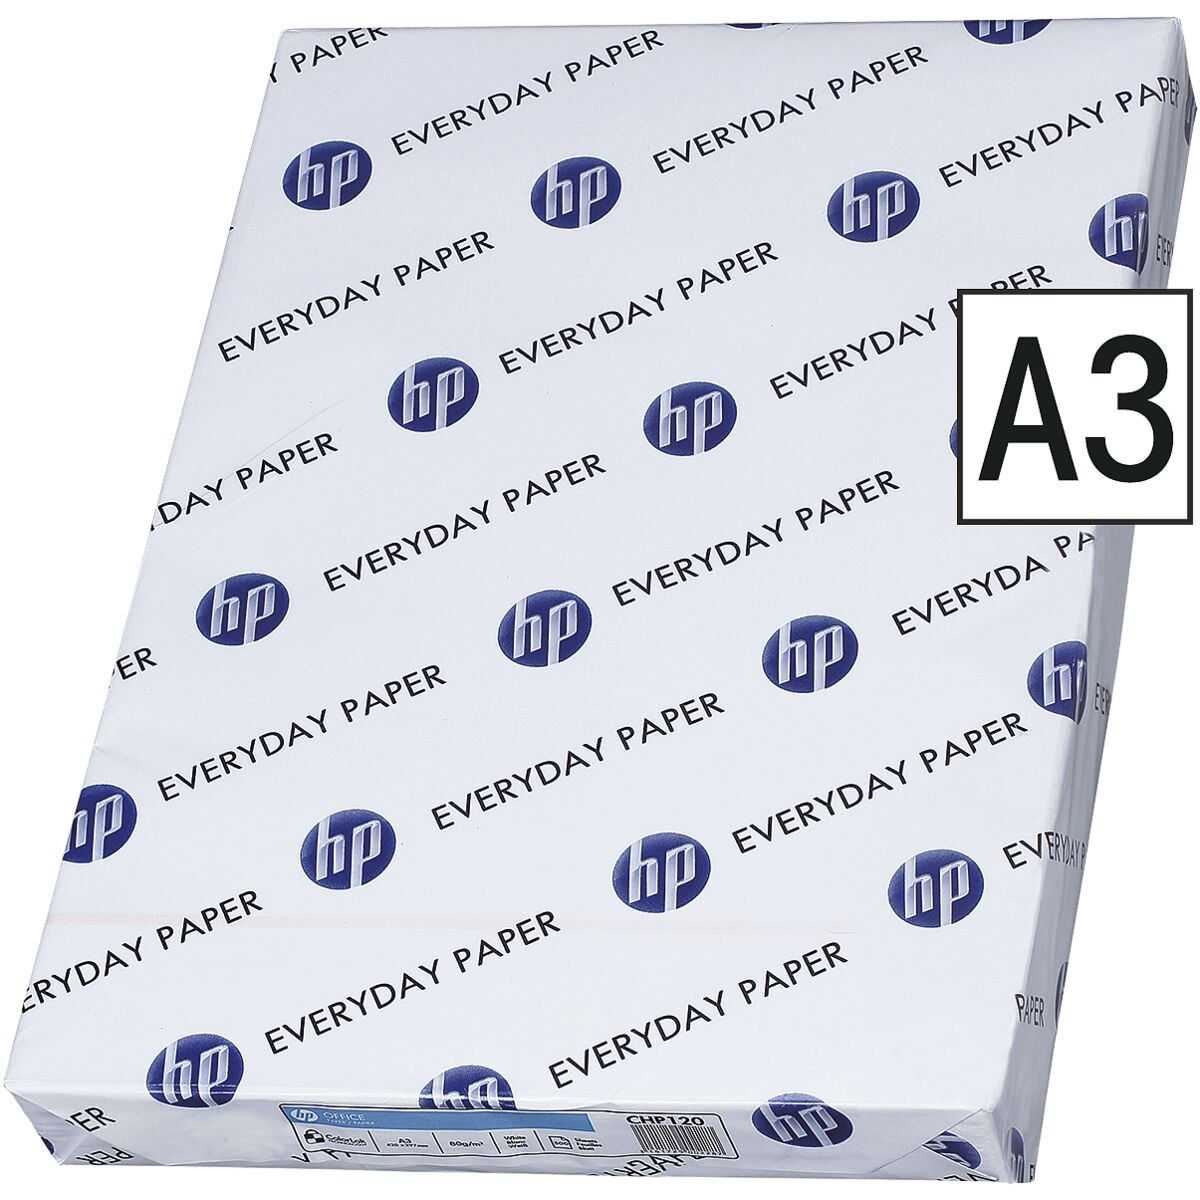 Multifunktionspapier A3 HP Office - 500 Blatt gesamt, 80g/qm